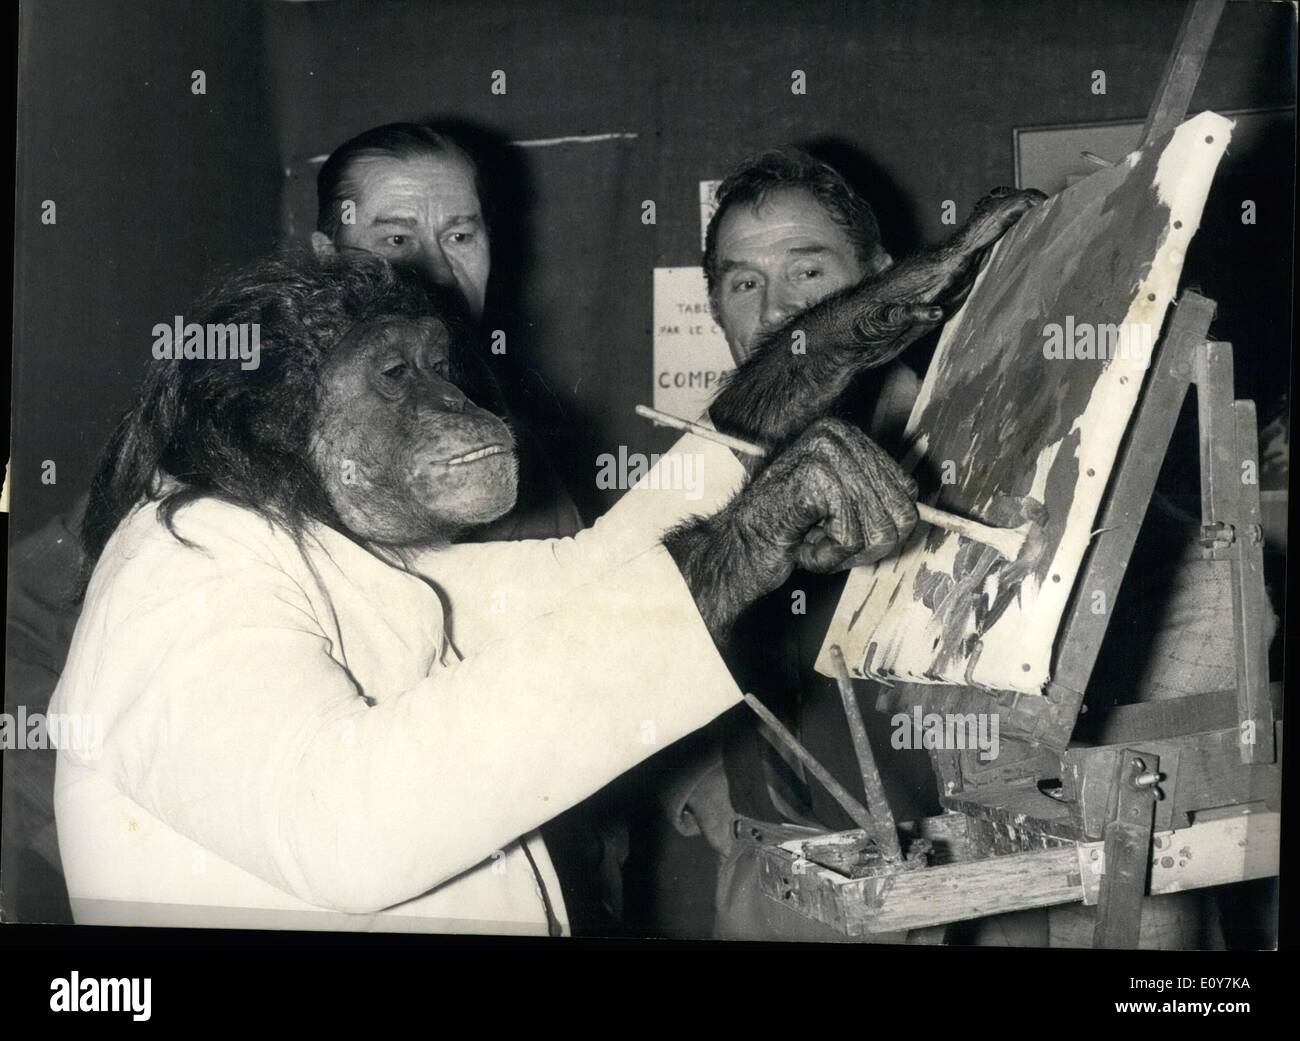 Avril 04, 1969 - les peintures de Pat des collègues déplaire : Pat, le chimpanzé, peintre, est la première d'argent pour avoir ses œuvres affichées lors d'une exposition actuellement en cours à Paris. Trois artistes qui ont participé à l'émission de retirer leurs peintures comme une protestation. La photo montre la PAT, les peintures des chimpanzés en mettant la touche finale à l'un de ses derniers ''travaille' Banque D'Images